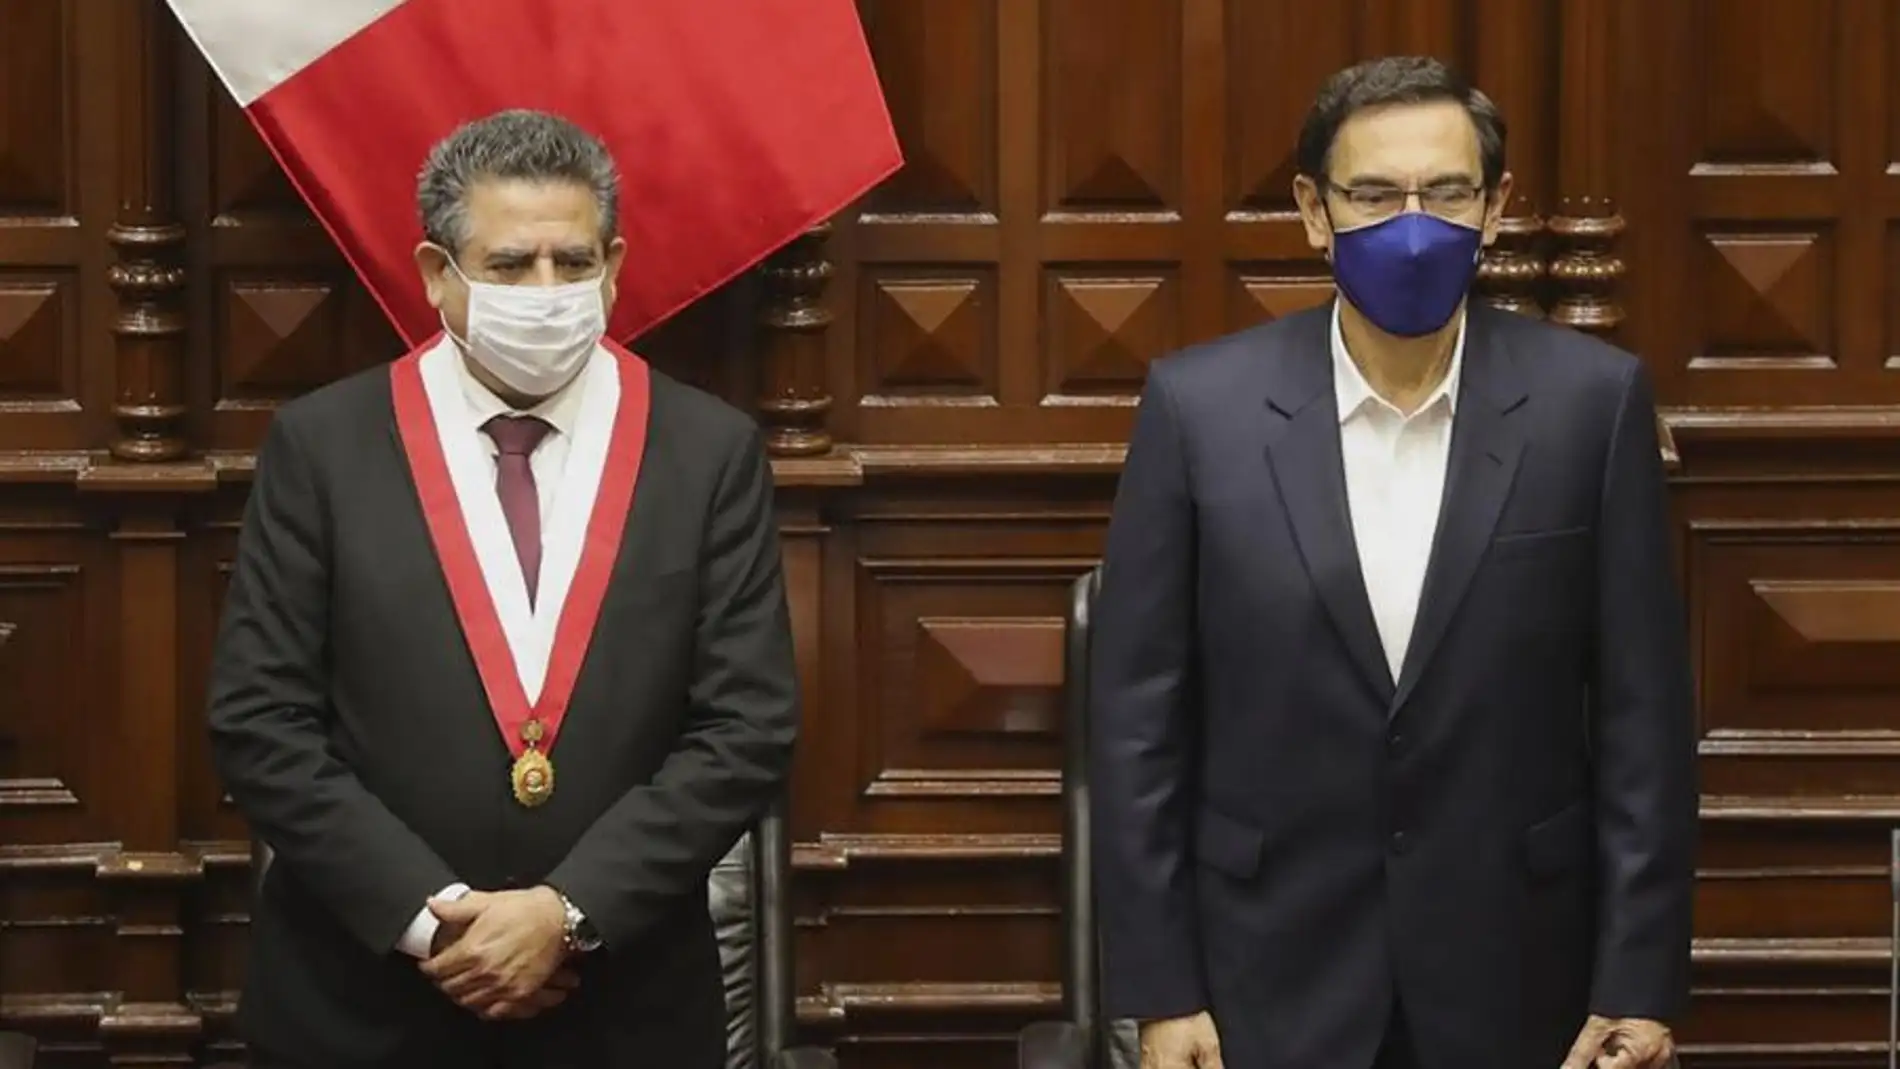 Manuel Merino anuncia su dimisión "irrevocable" a la Presidencia de Perú